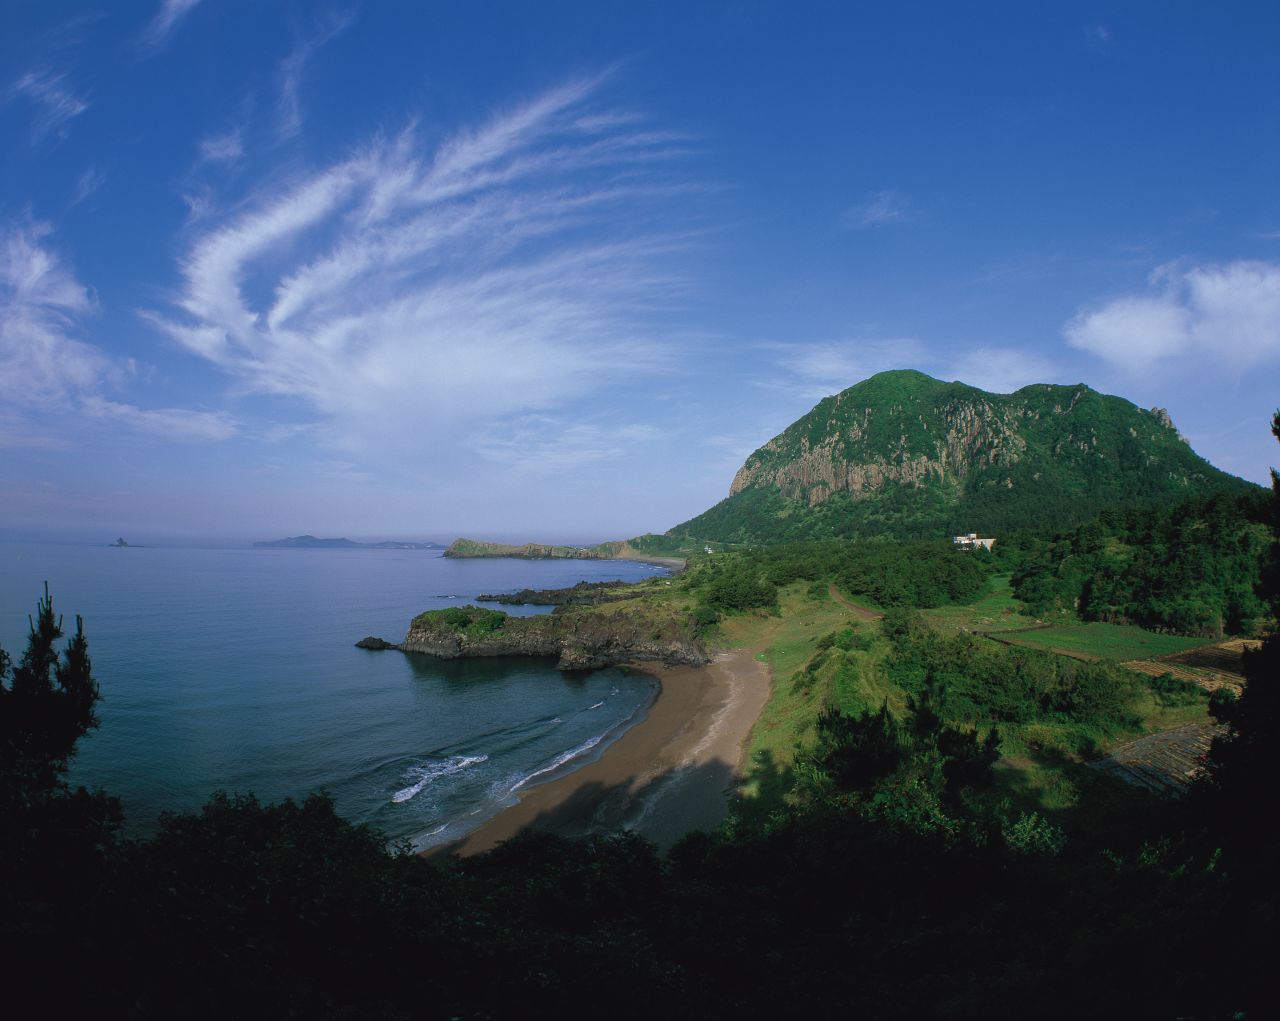 Jeju island is a hub of nature tourism.  